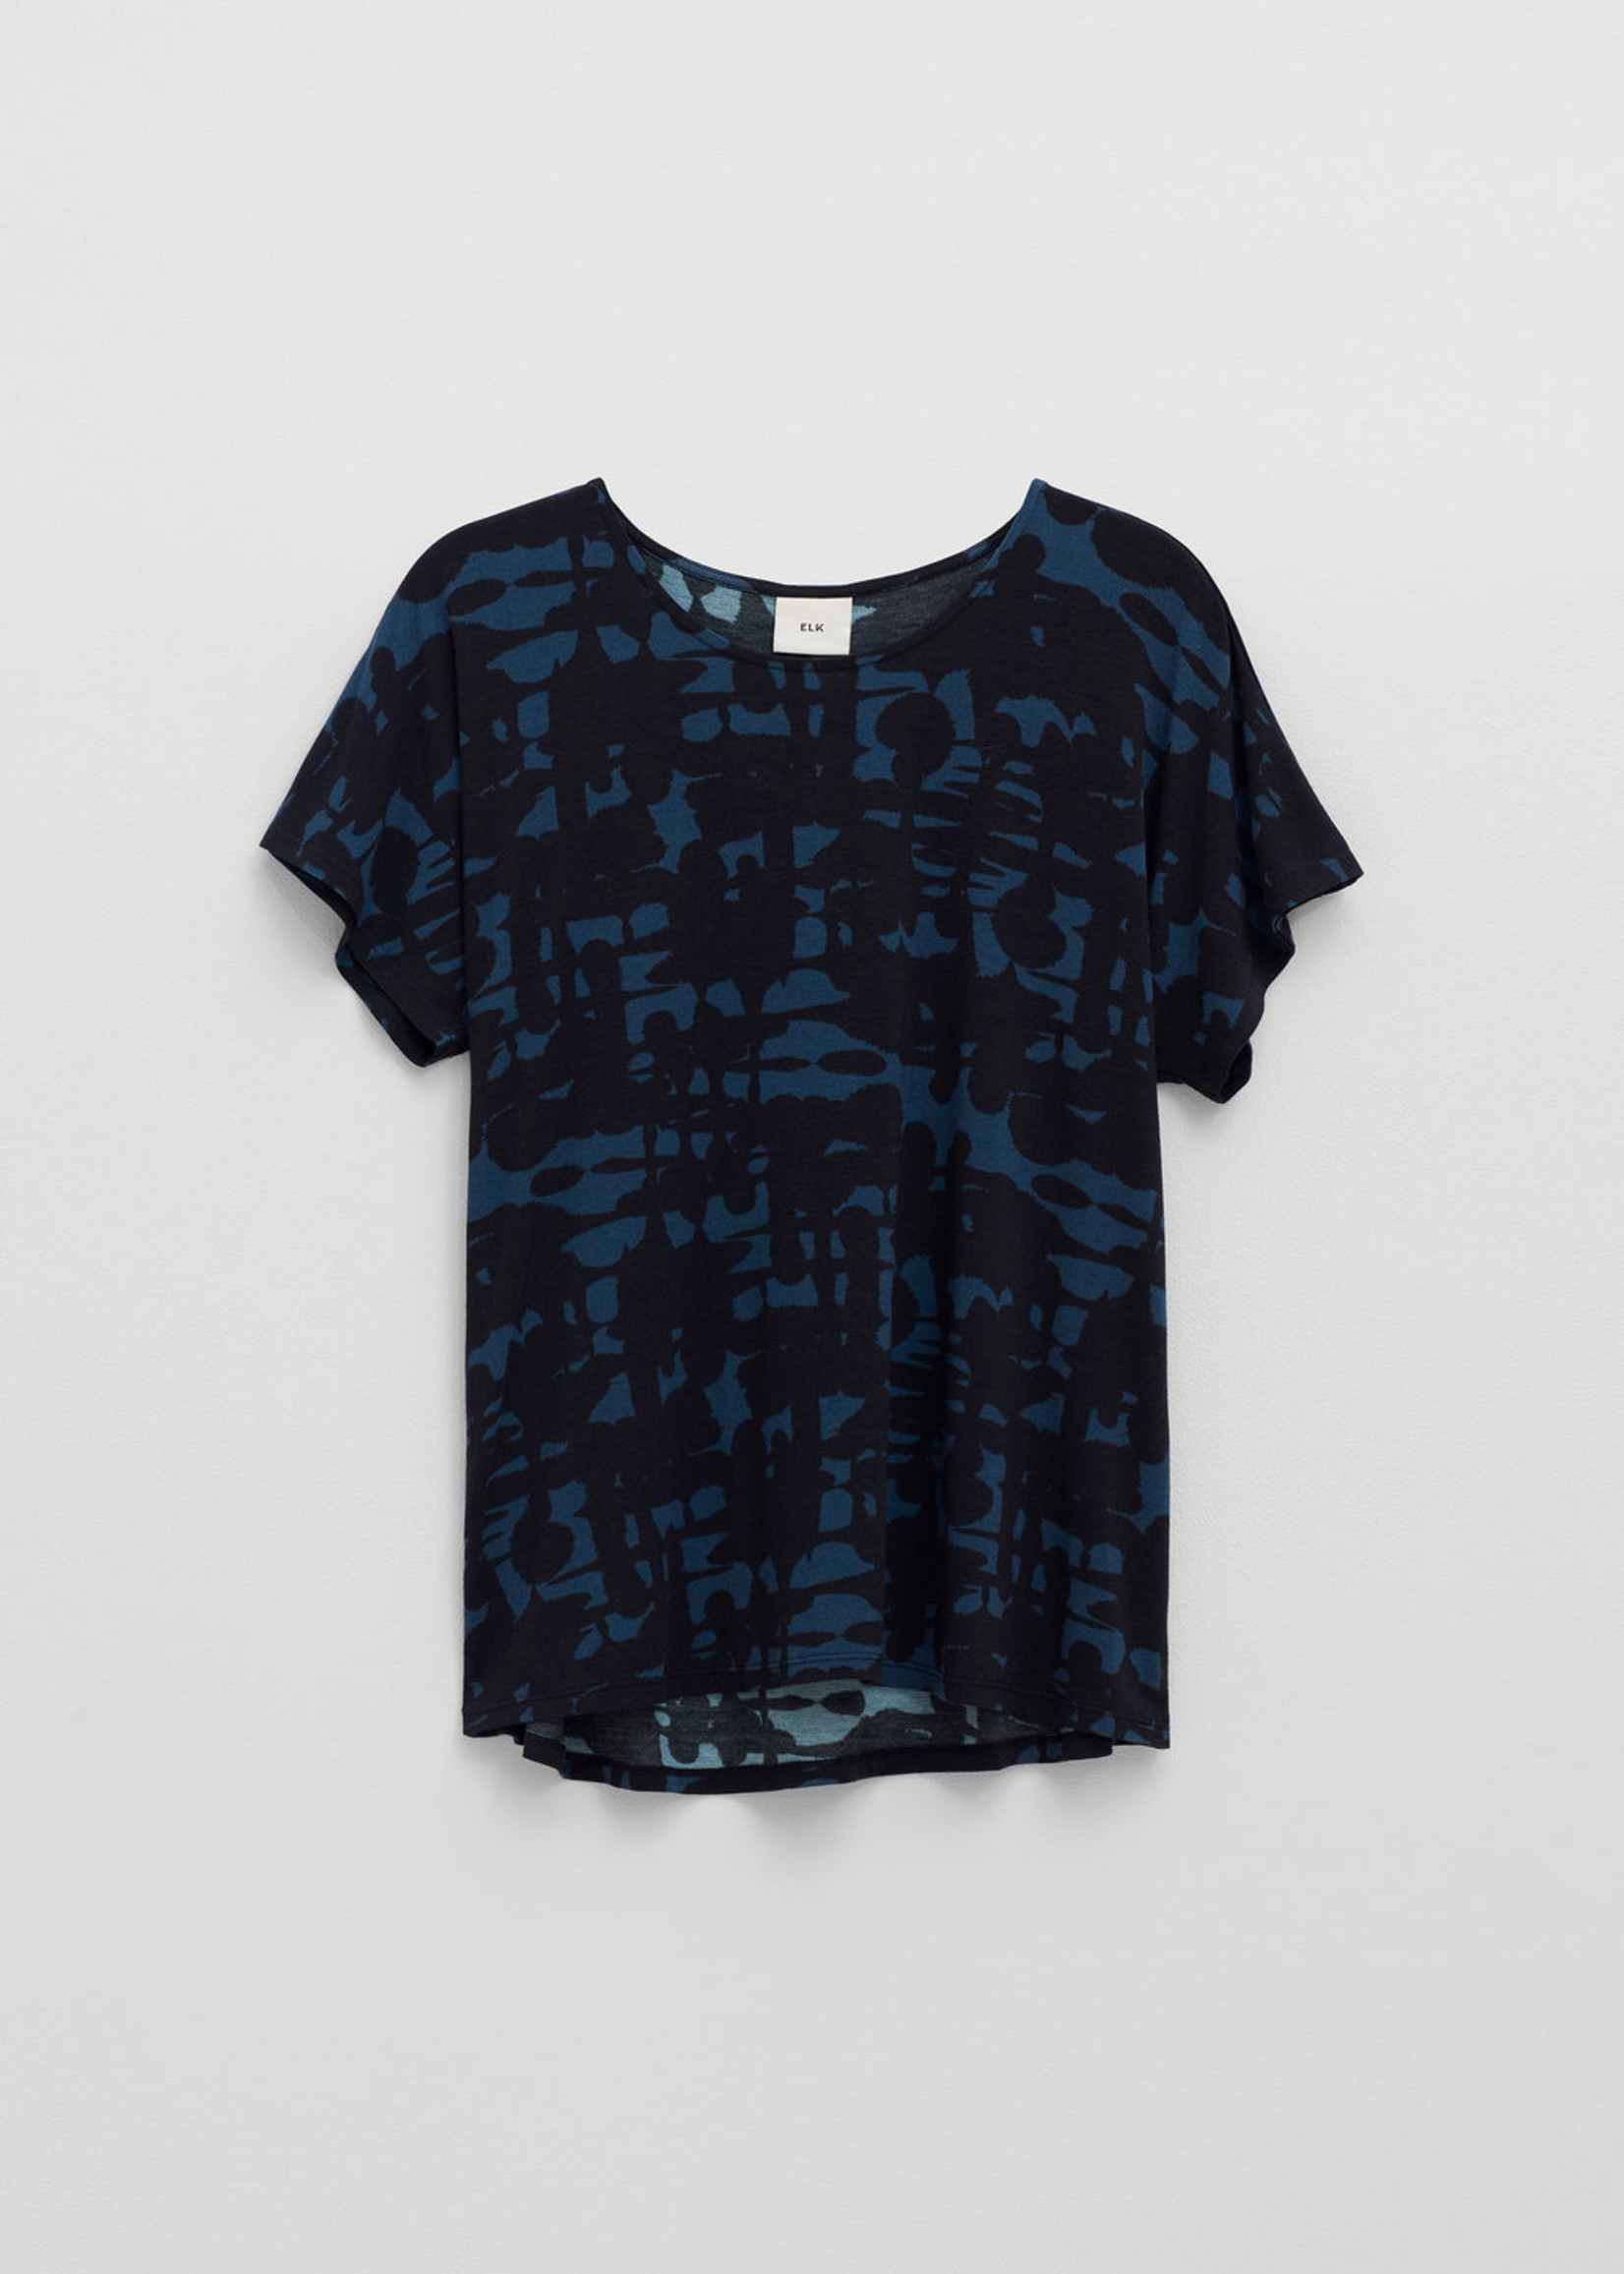 Inkt T-Shirt Steel/Black Print